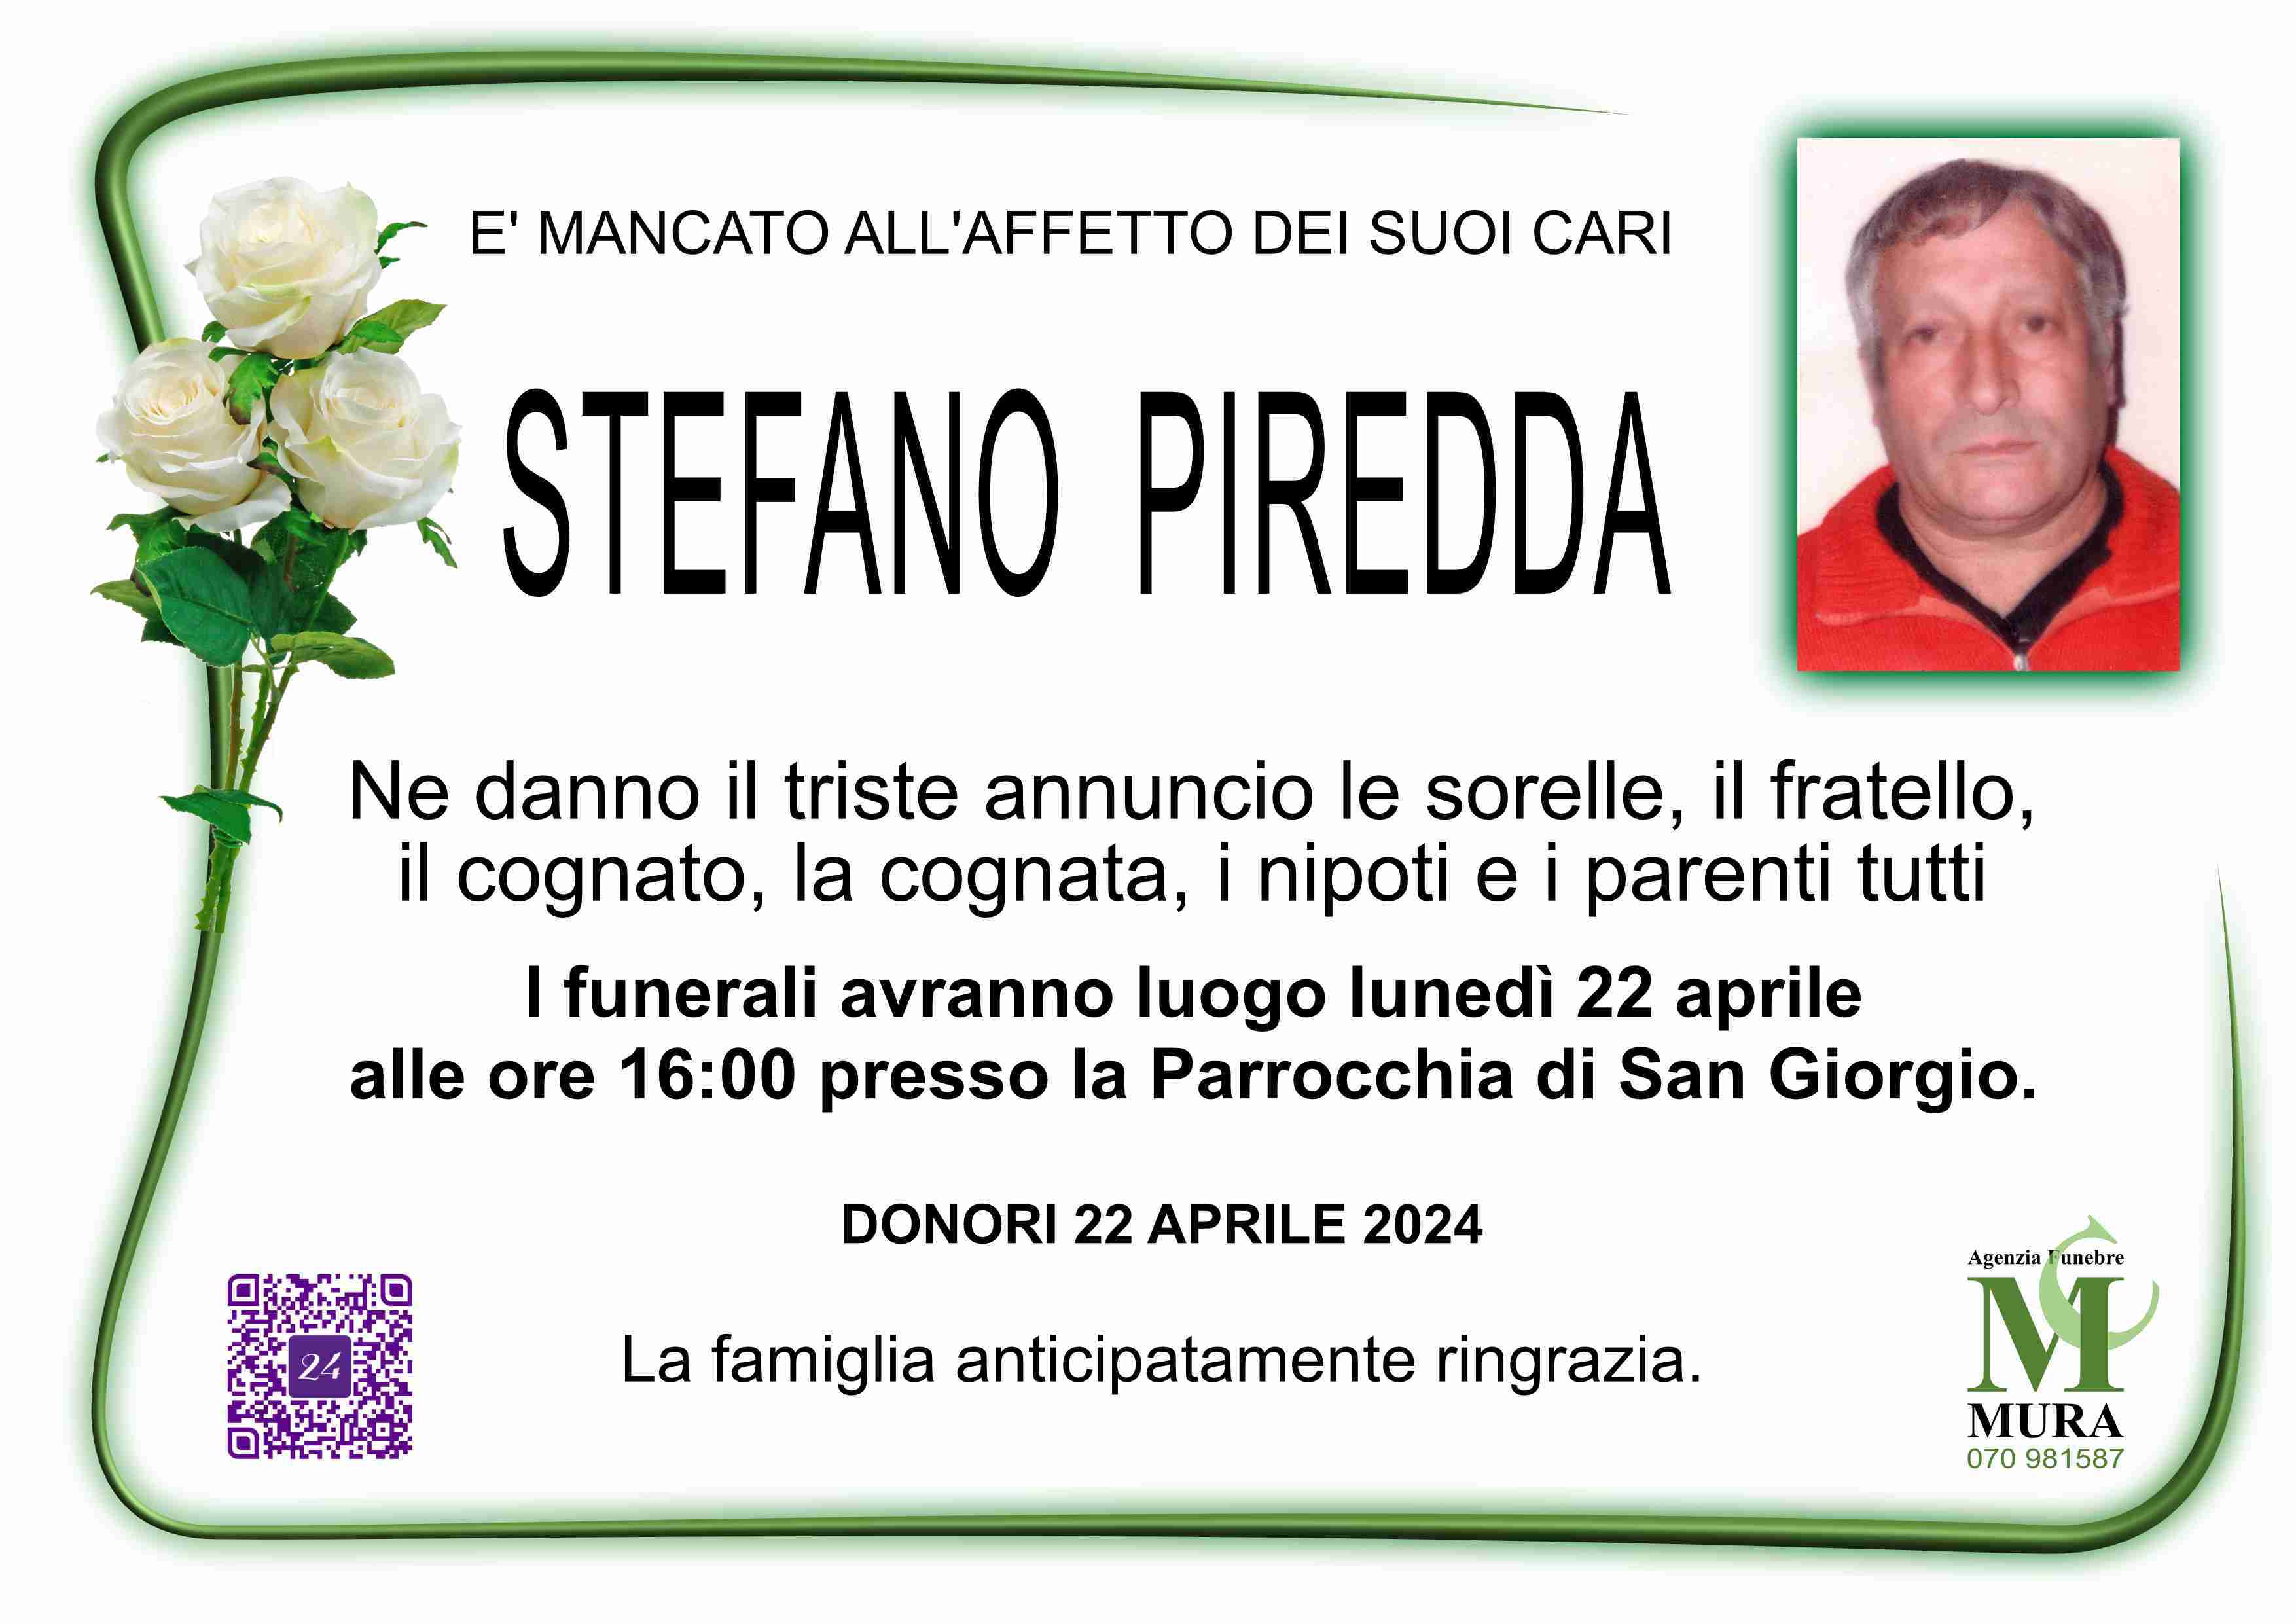 Stefano Piredda